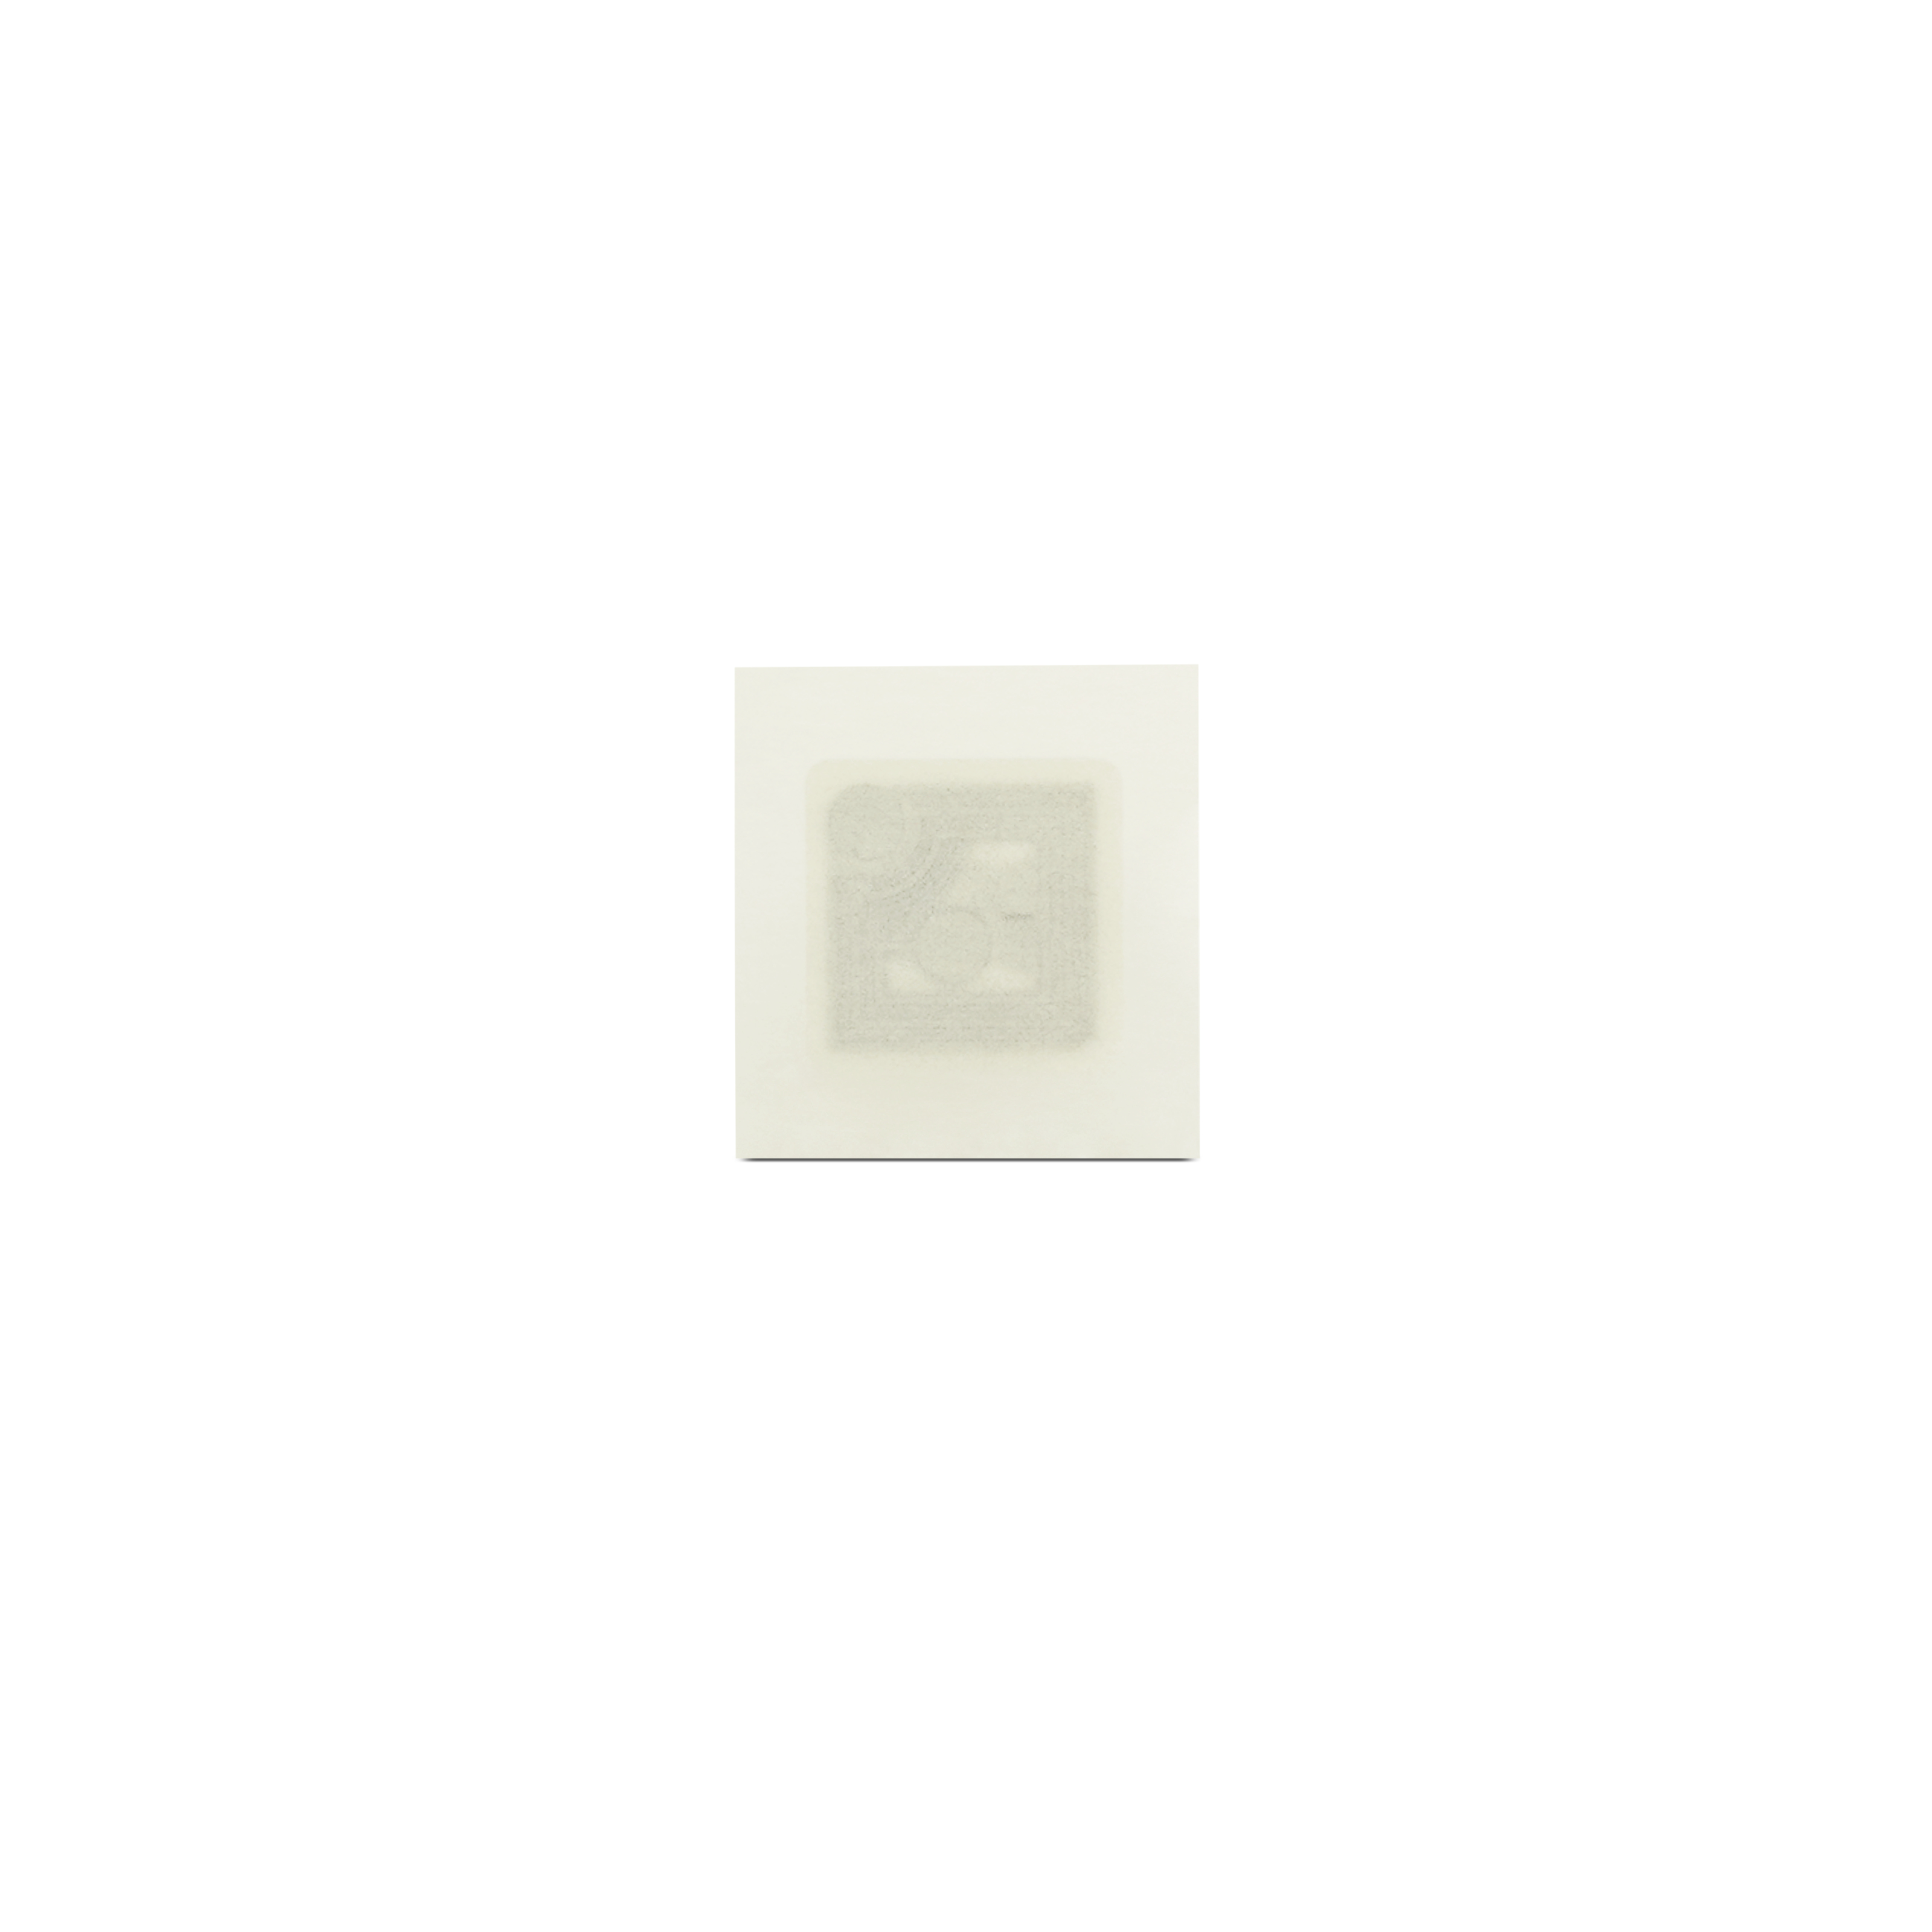 NFC Sticker PET - 12,5 x 12,5 mm - ICODE SLIX - 128 Byte - weiß